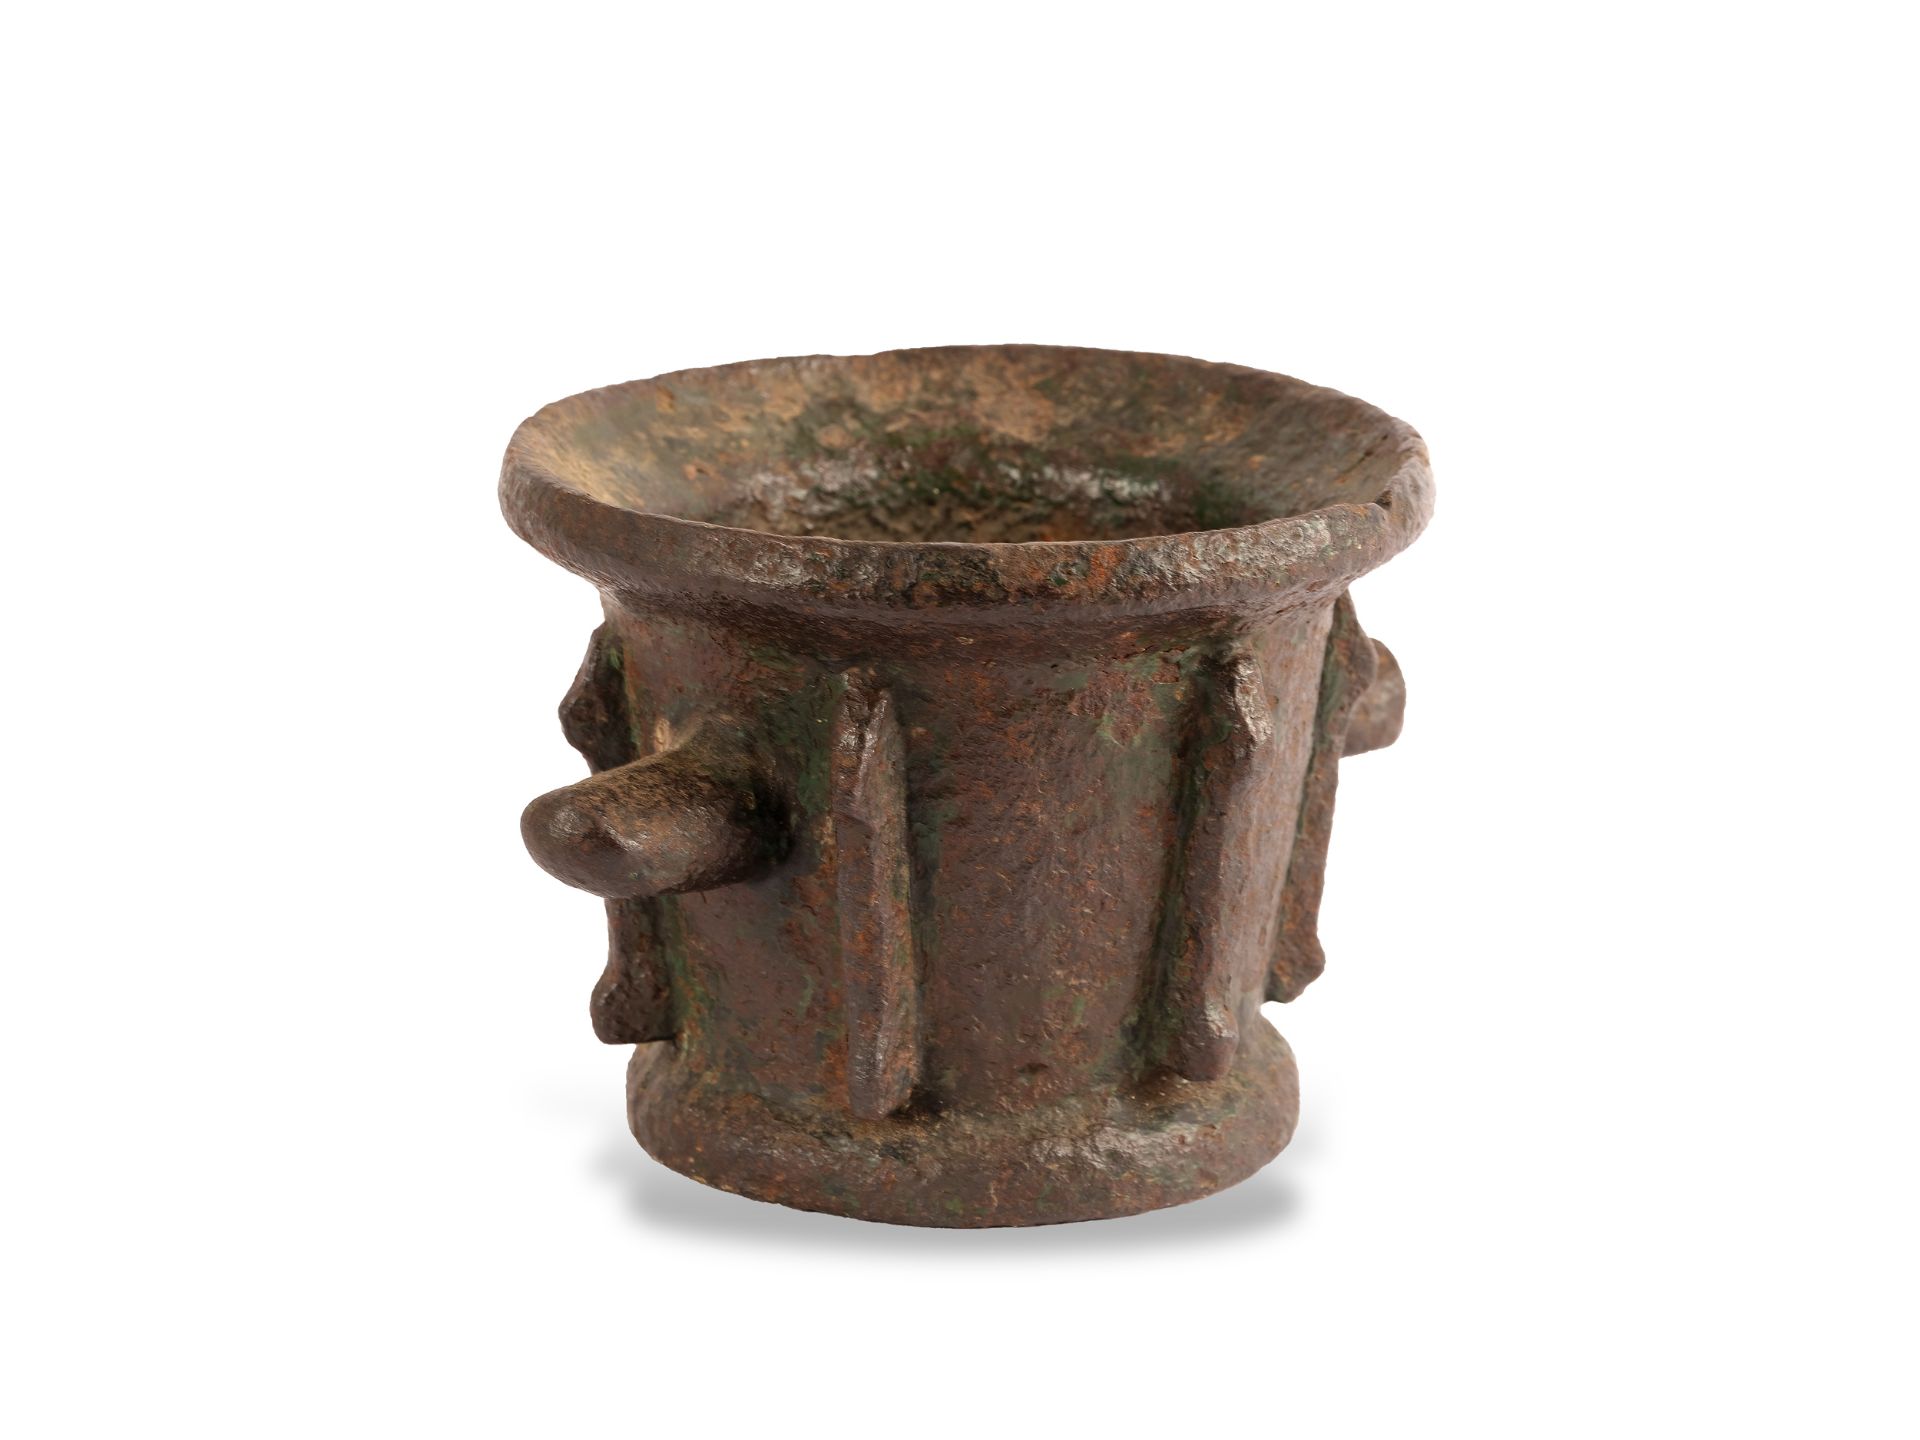 Rippenmörser mit Handhabung in runder Form, 16./17. Jahrhundert, Bronze gegossen